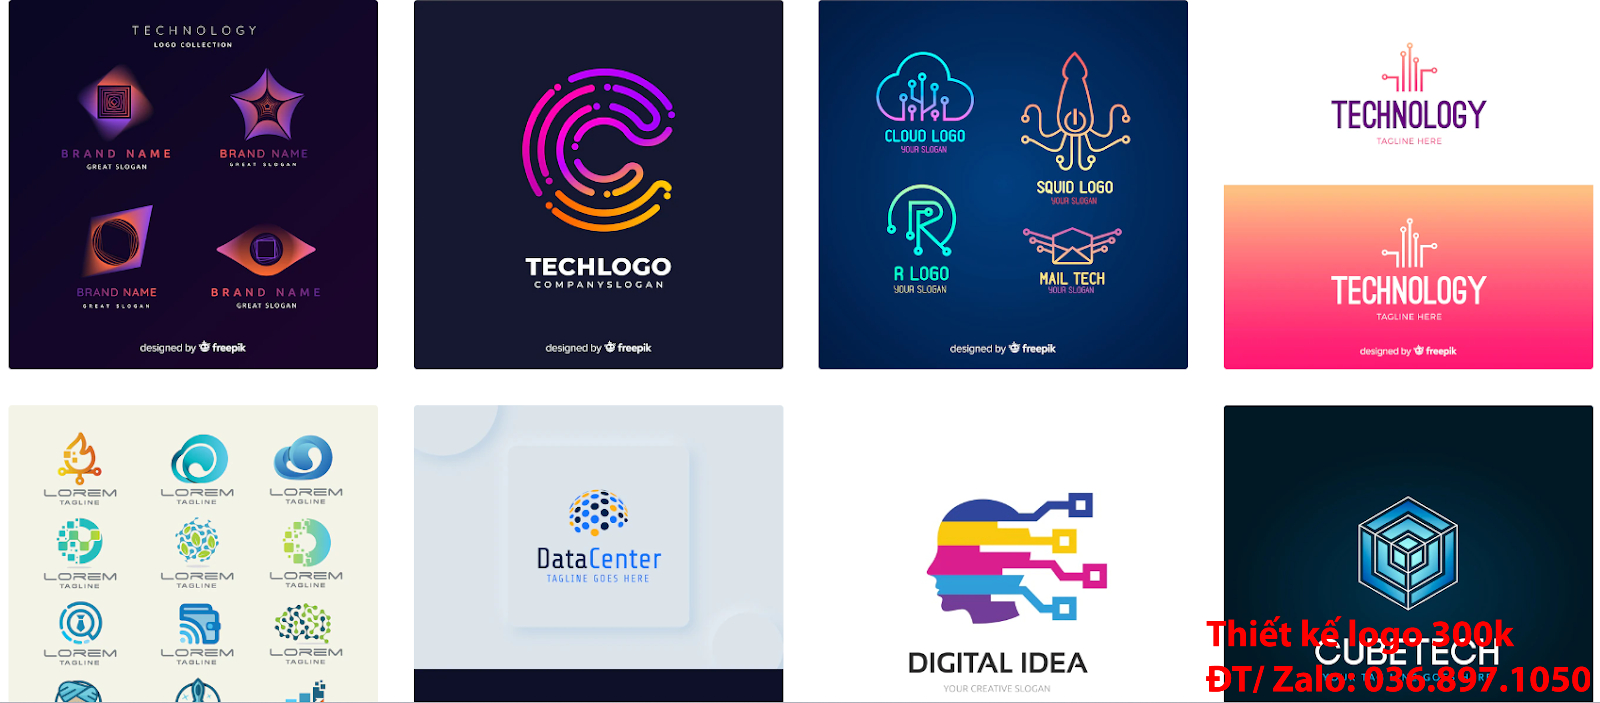 Công ty nhận làm các Thiết Kế Logo công ty công nghệ đẹp giá rẻ chất lượng tại Tp Hồ Chí Minh